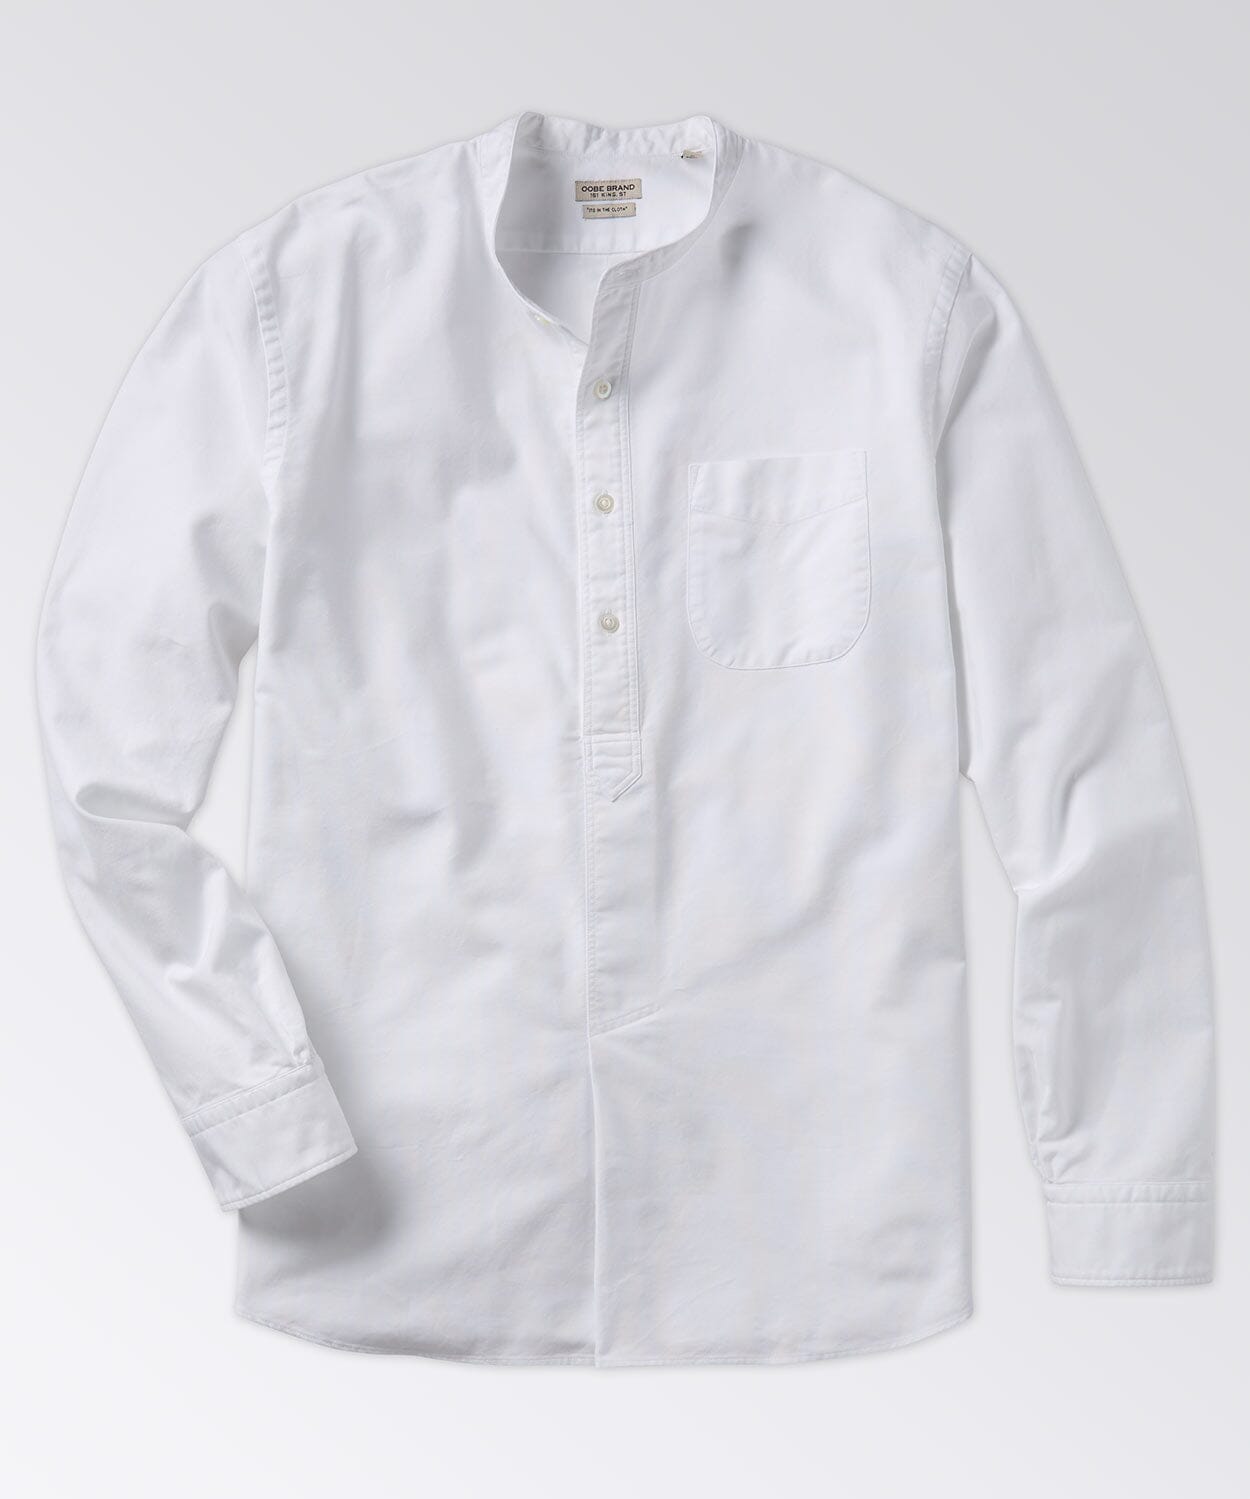 Rowan Shirt Button Downs OOBE BRAND Classic White S 